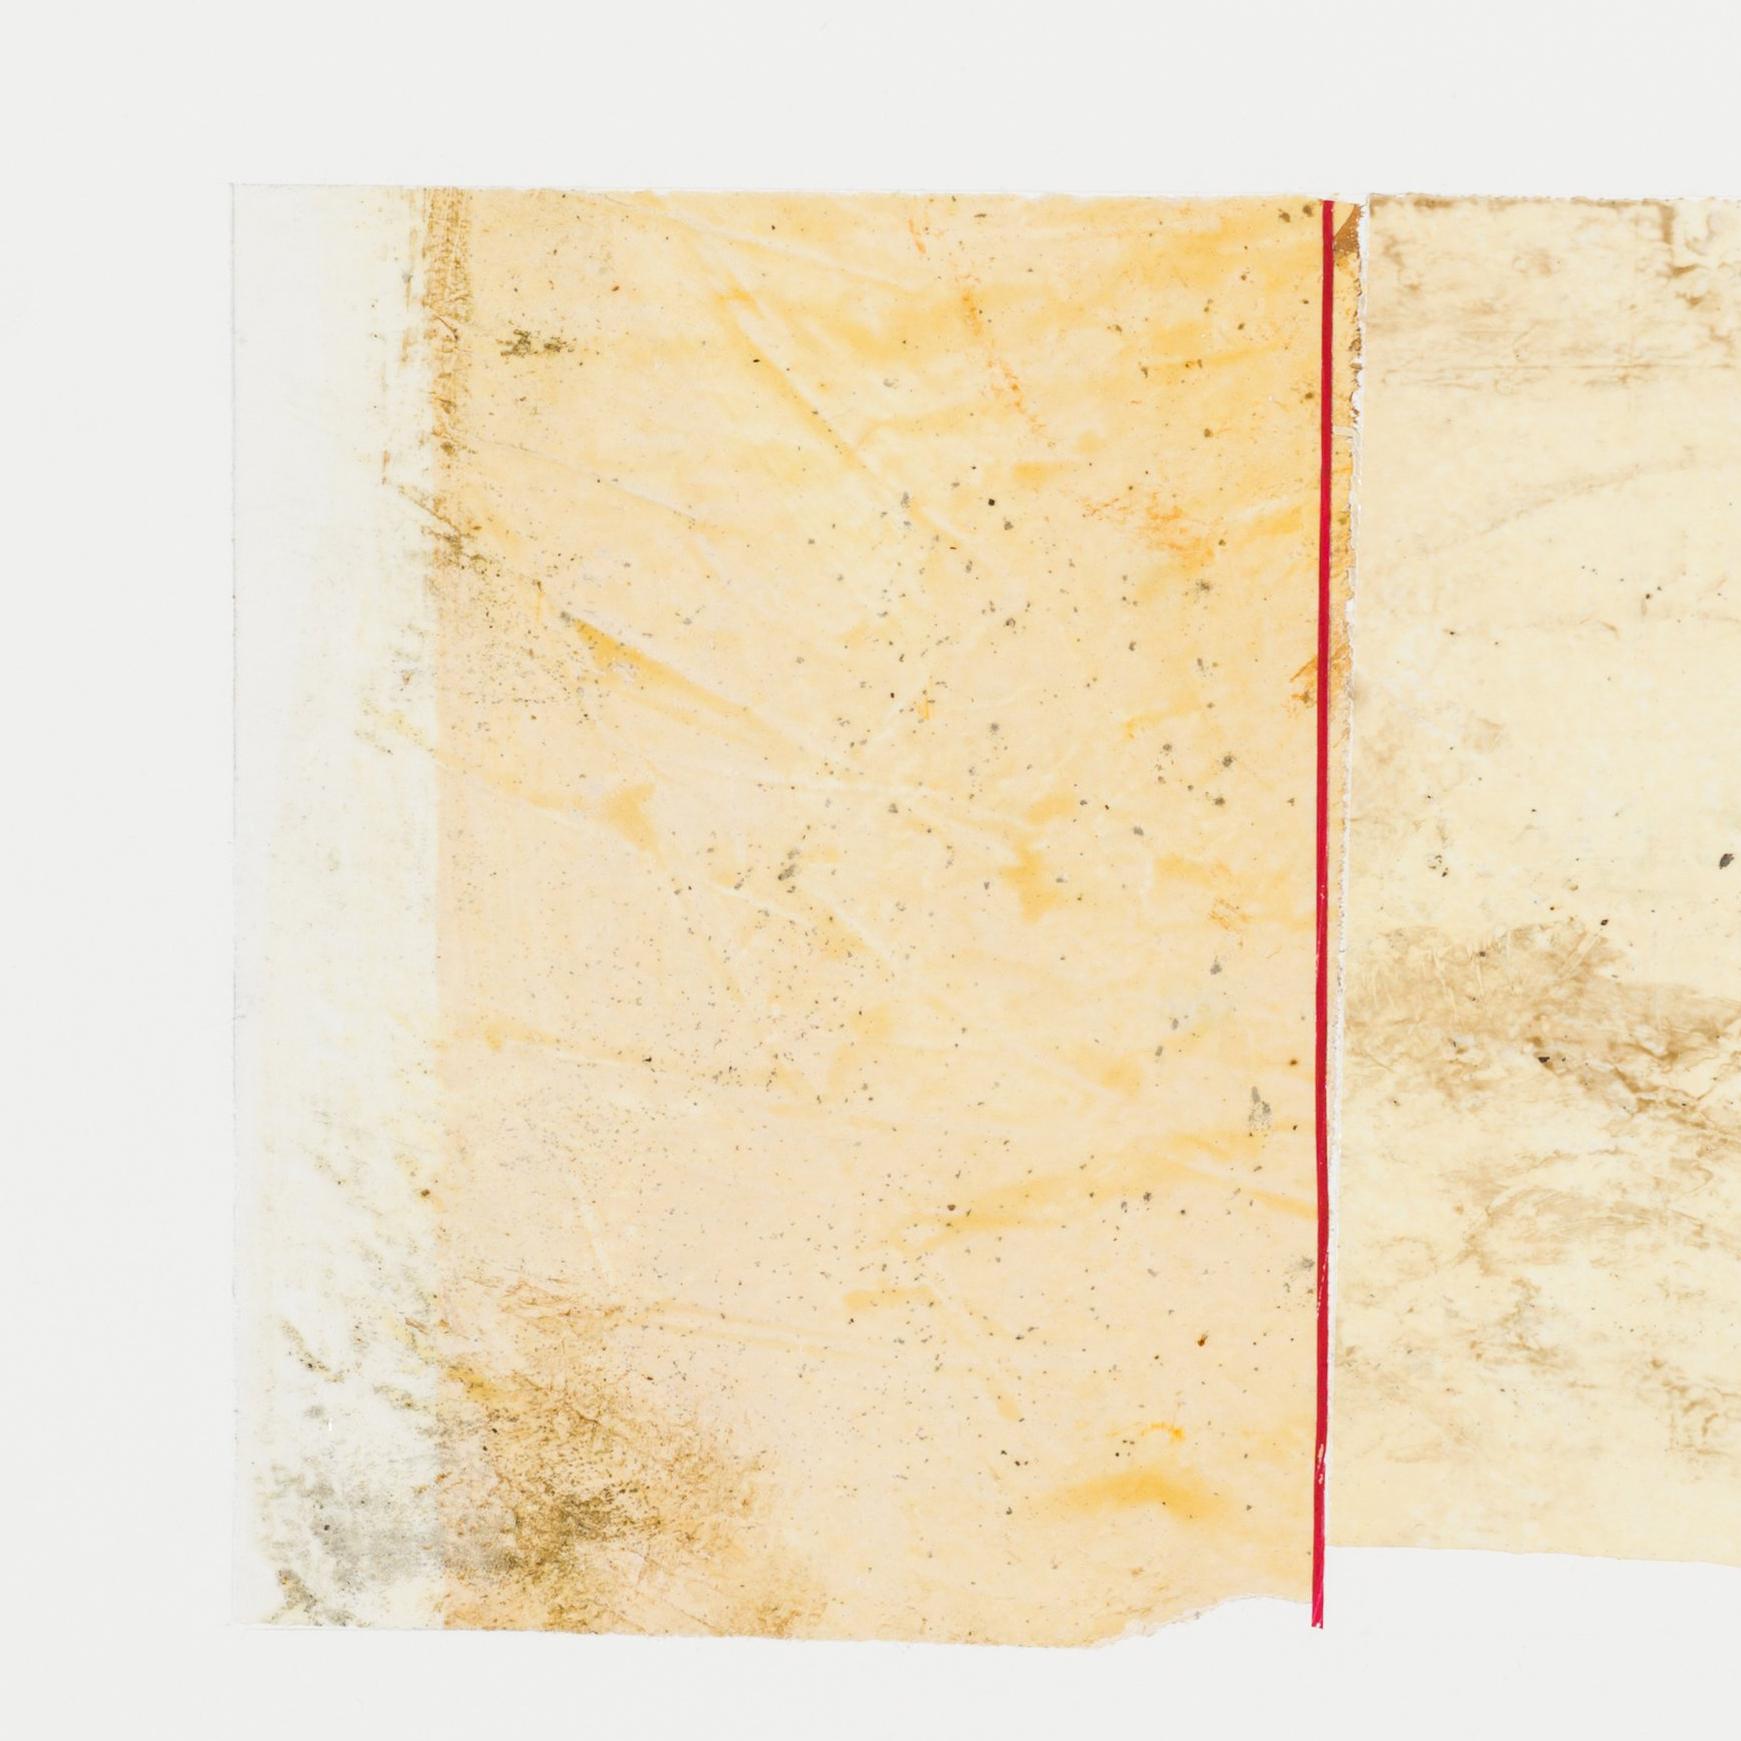 mischtechnik auf Papier; ungerahmt 

ganzes Blatt 22 x 30 Zoll 

signiert unten rechts

Der neoromantische Maler Hiro Yokose verschmilzt mehrere Schichten aus Wachs und Ölfarbe zu geheimnisvollen, verschleierten Landschaften, die von Lichtblitzen am